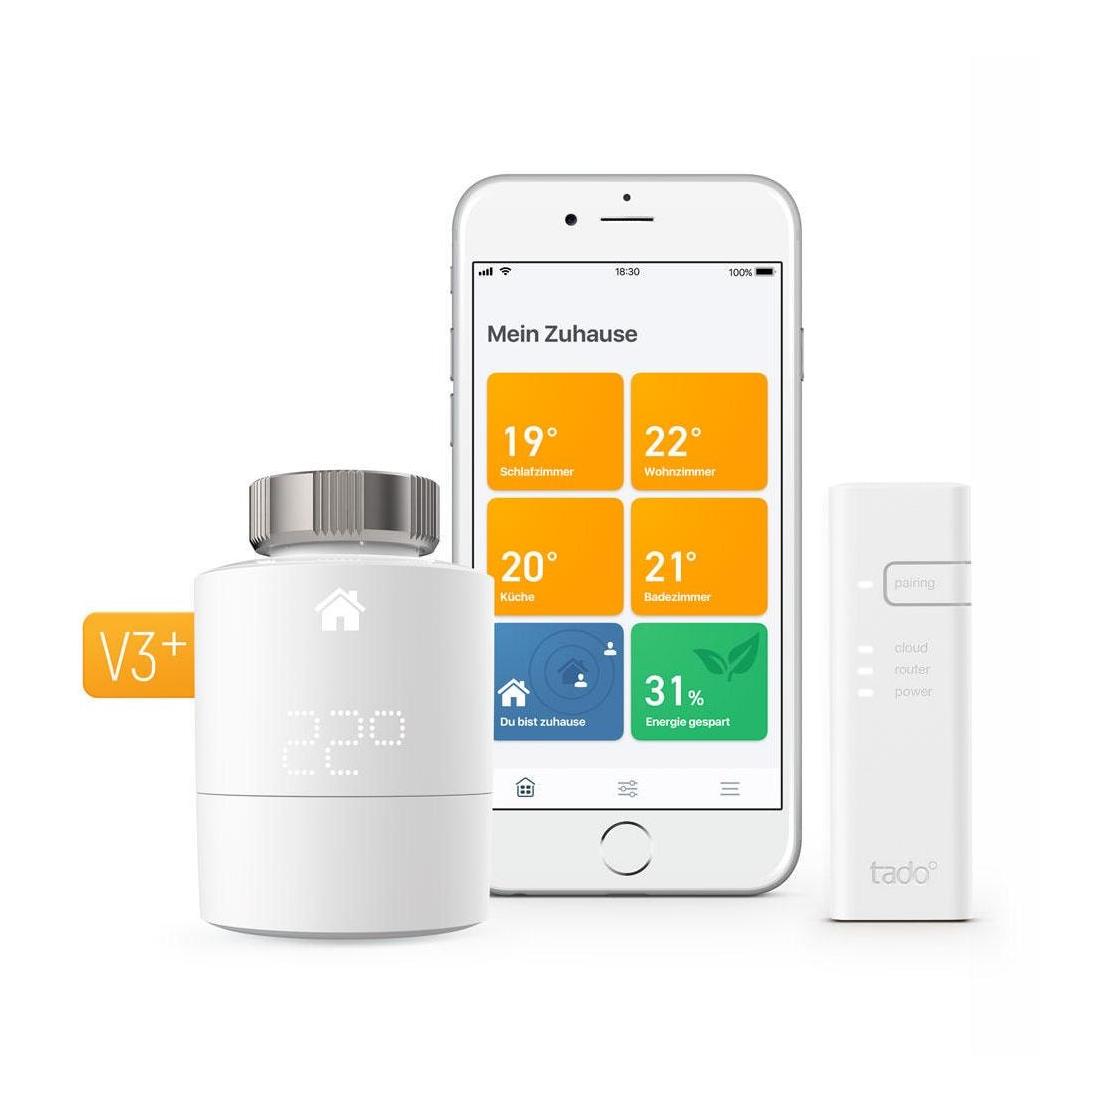 Tado° Smart Thermostat Starter Kit V3+ for 1 radiator - White